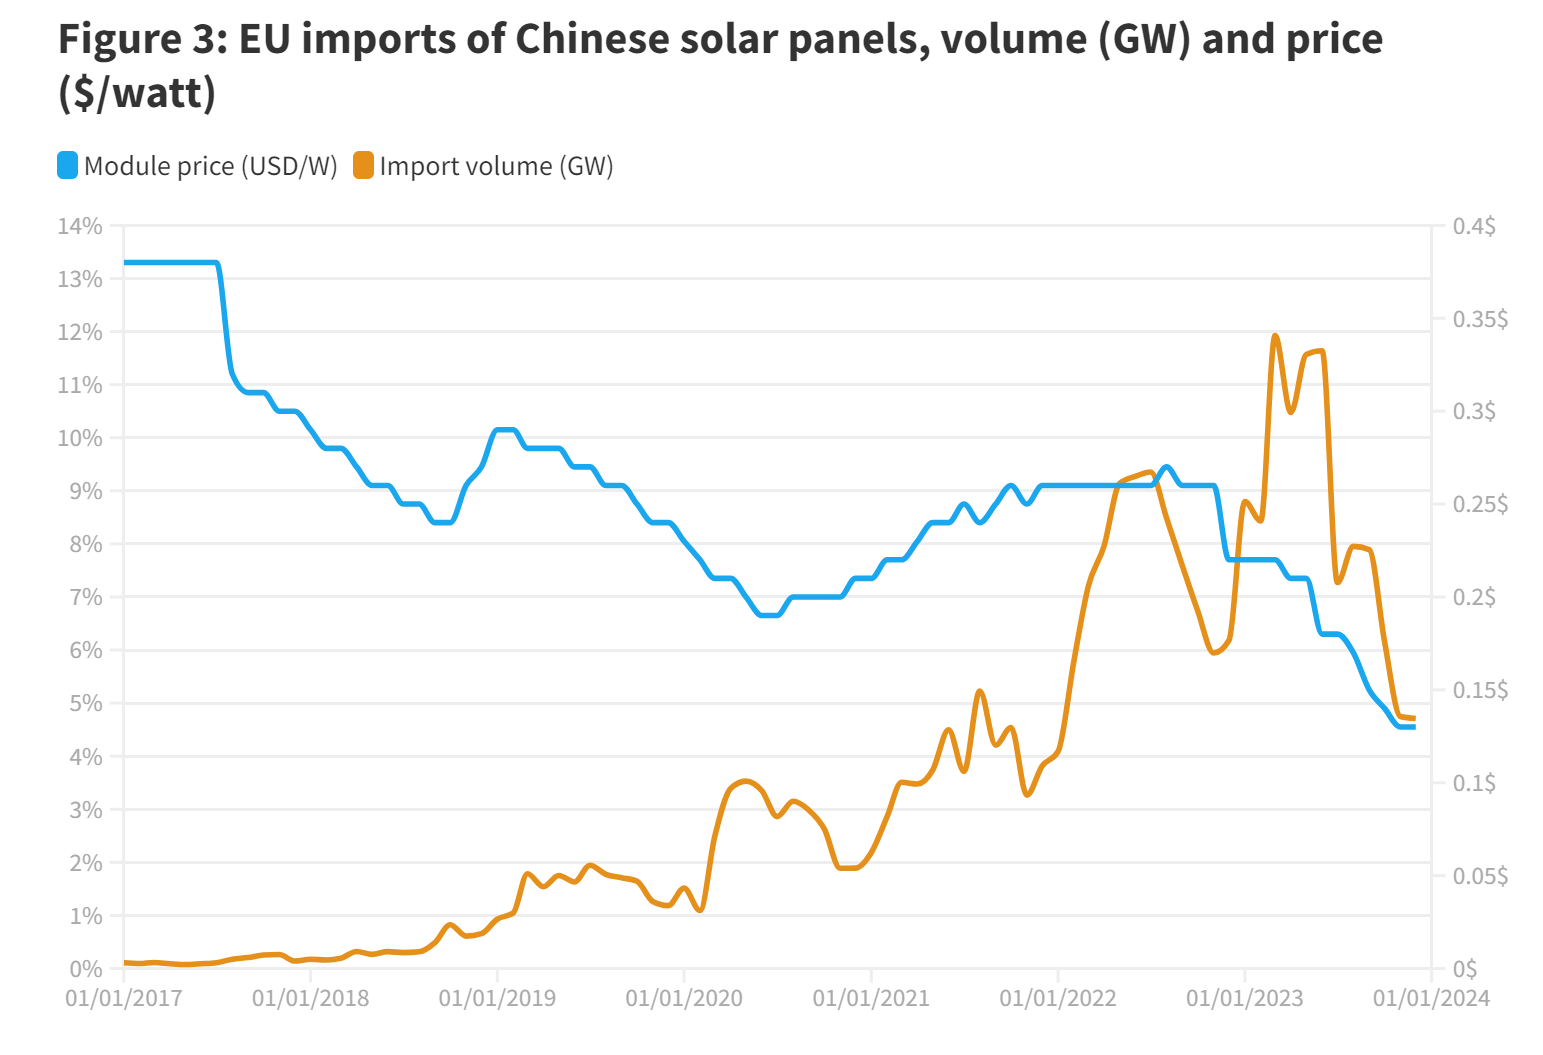 EU imports of Chinese solar panels